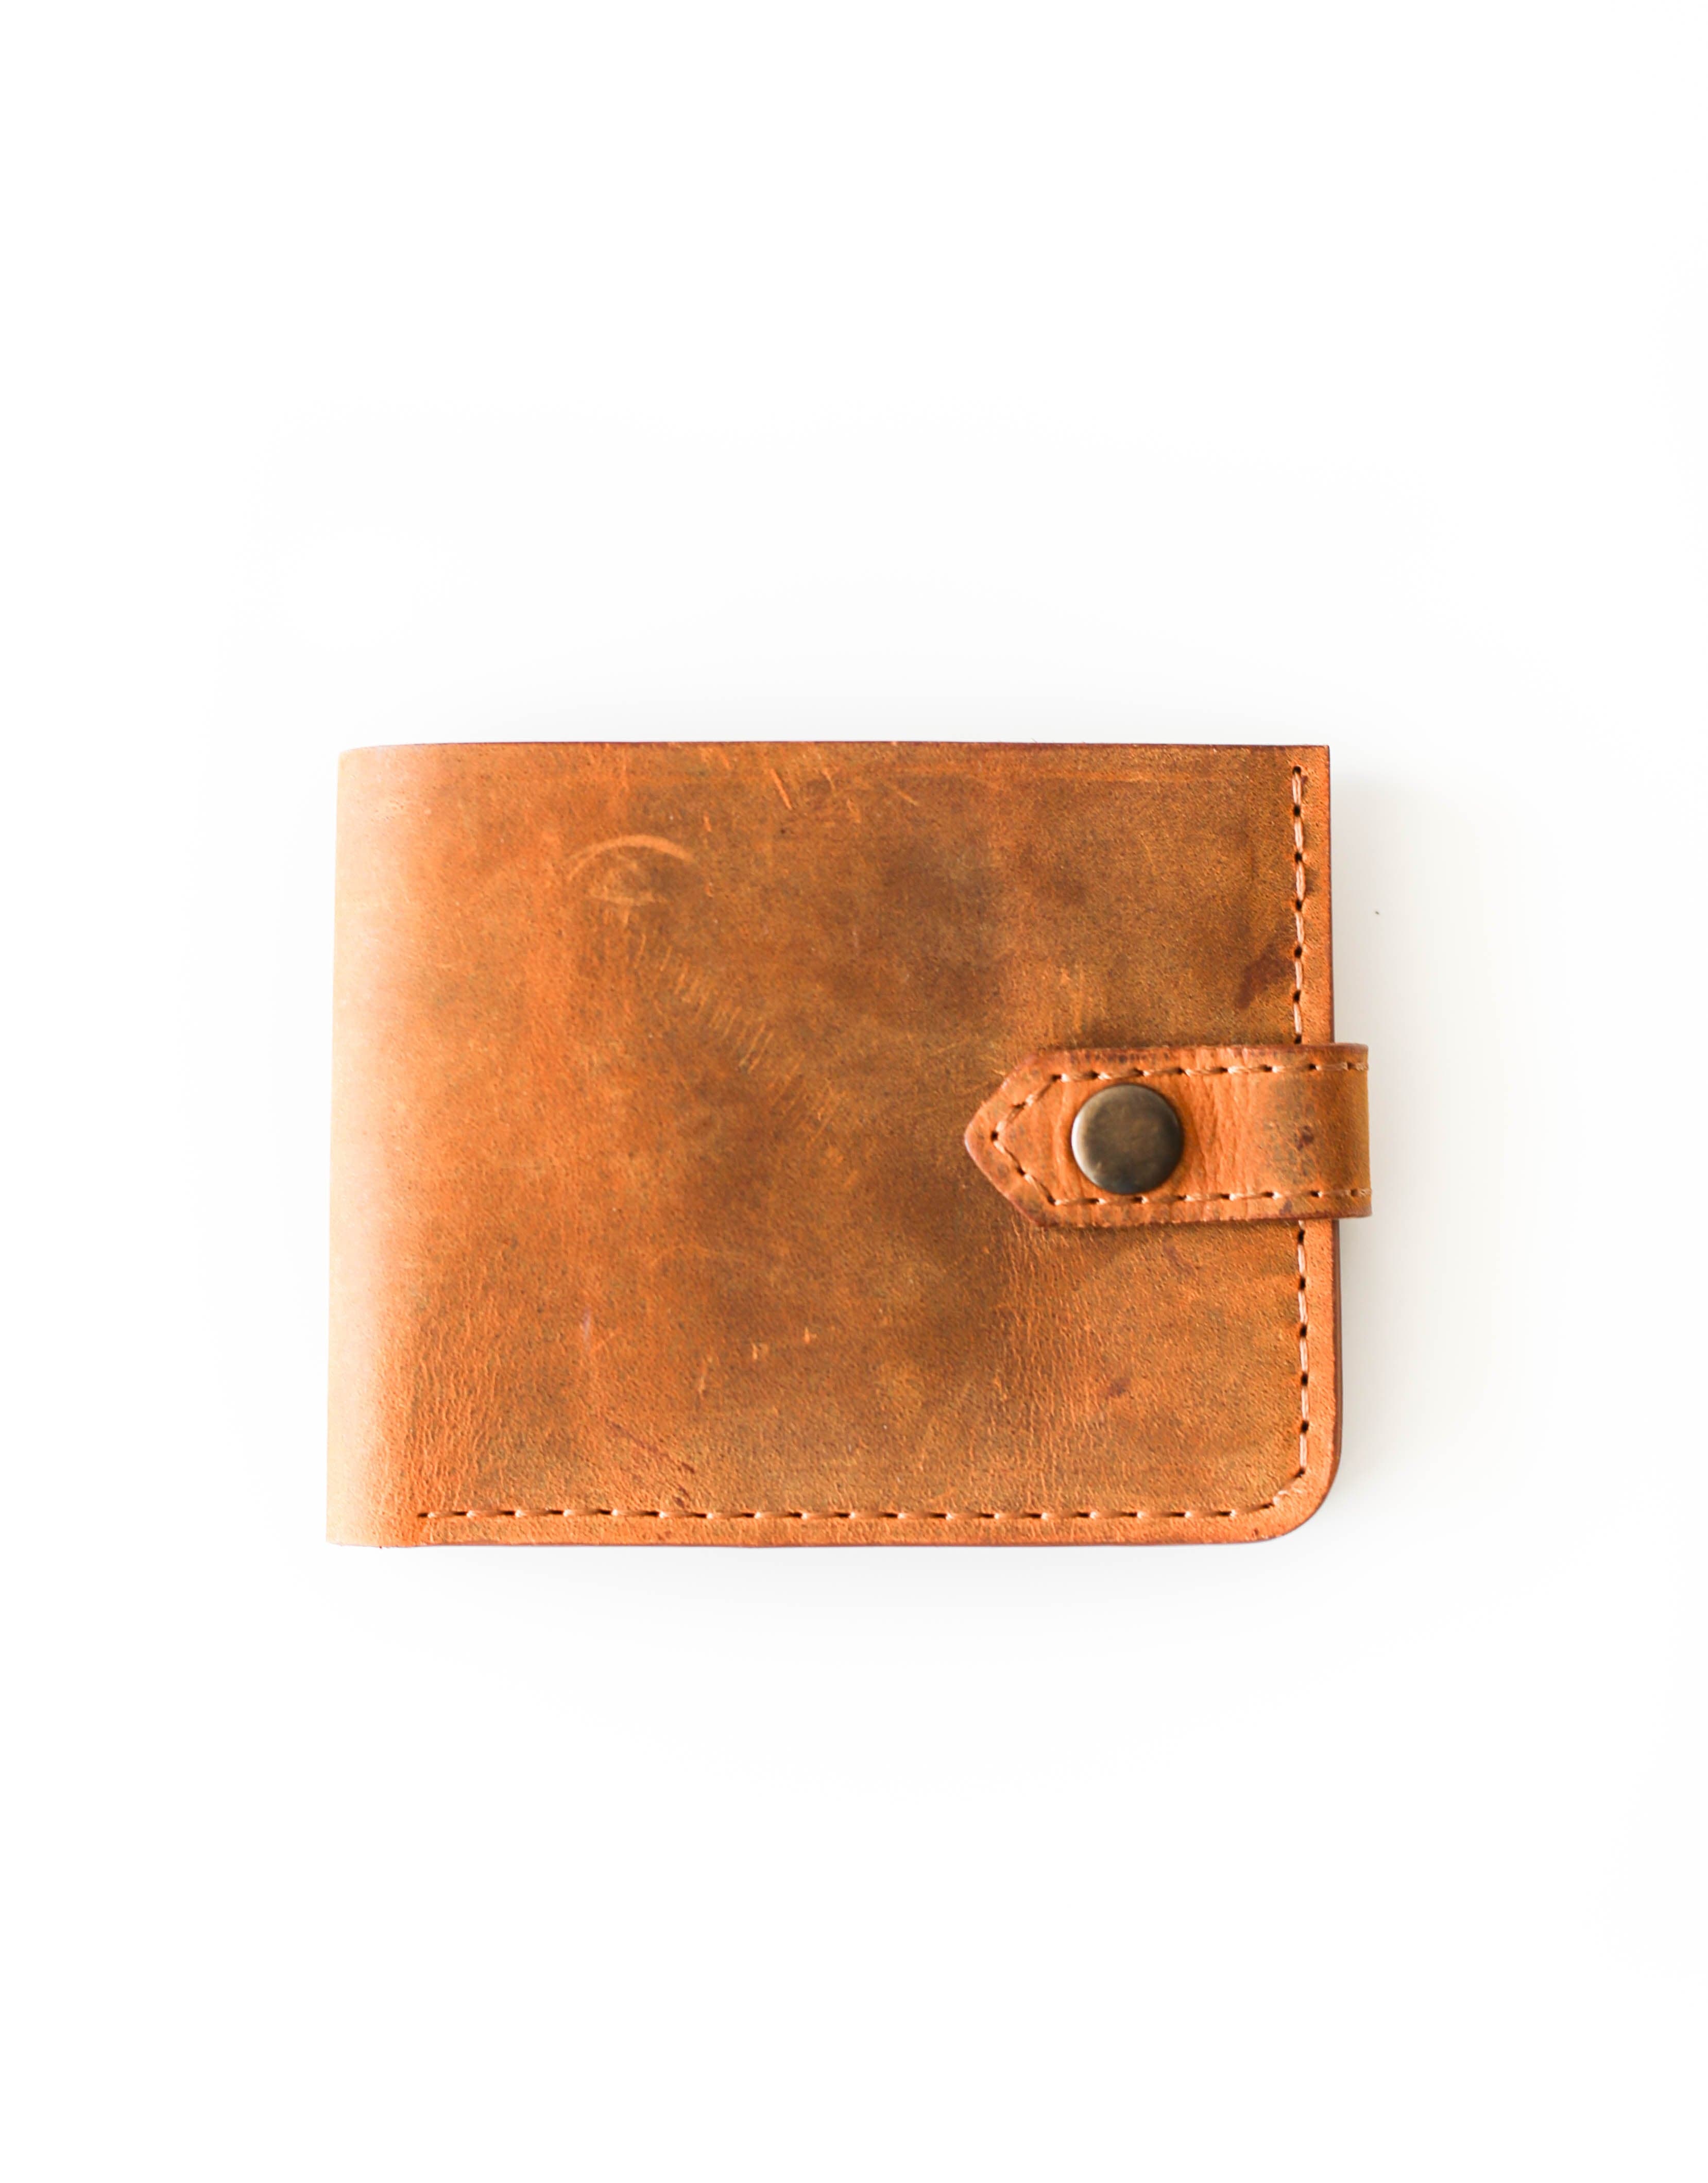 The Slim Wallet Vintage Brown